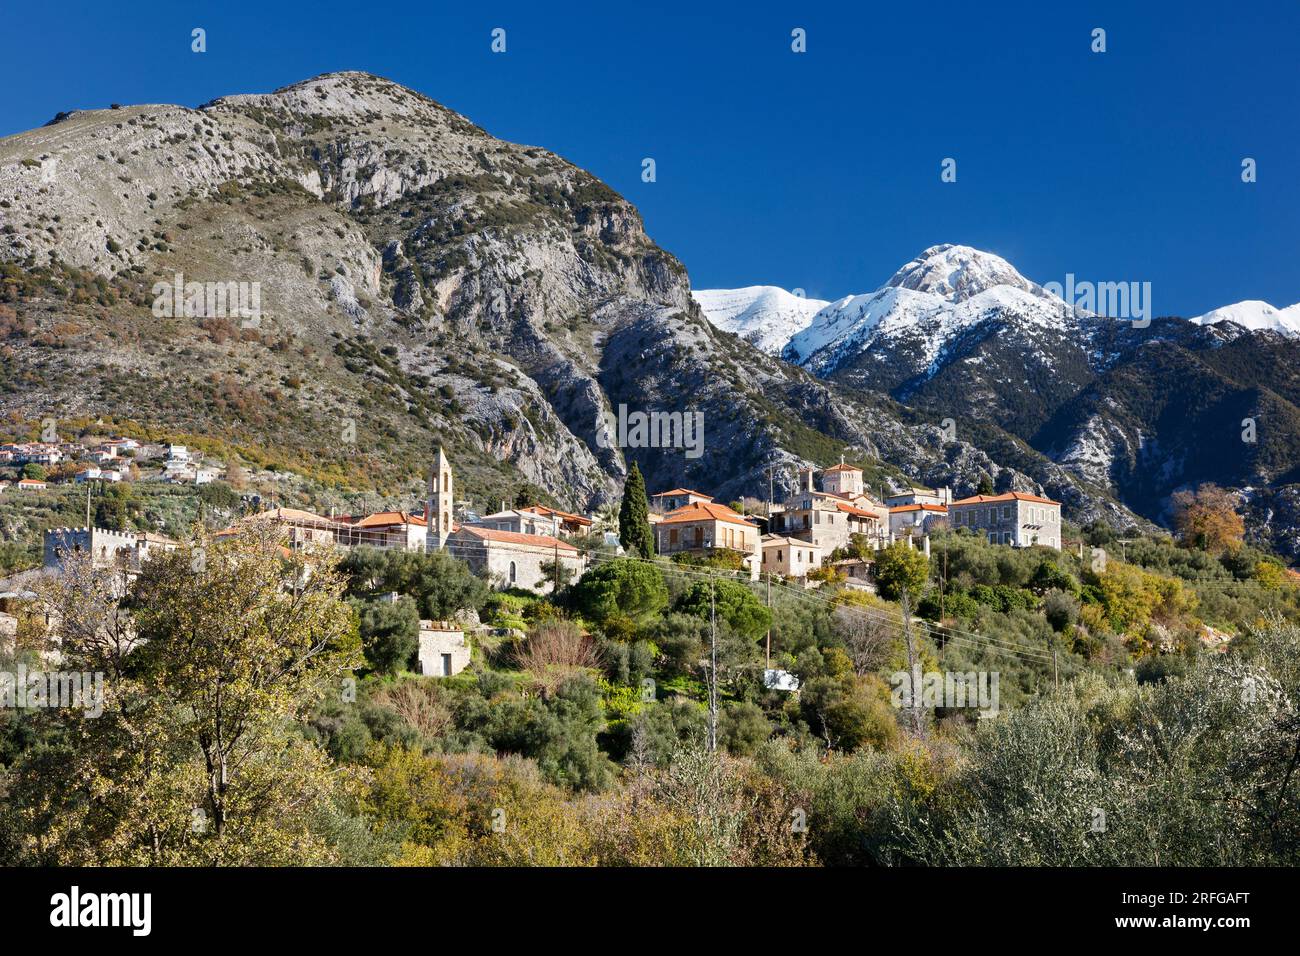 Il villaggio di Chora a Exochori, nella penisola di mani in Grecia, con la catena montuosa Taygetos oltre. Foto Stock